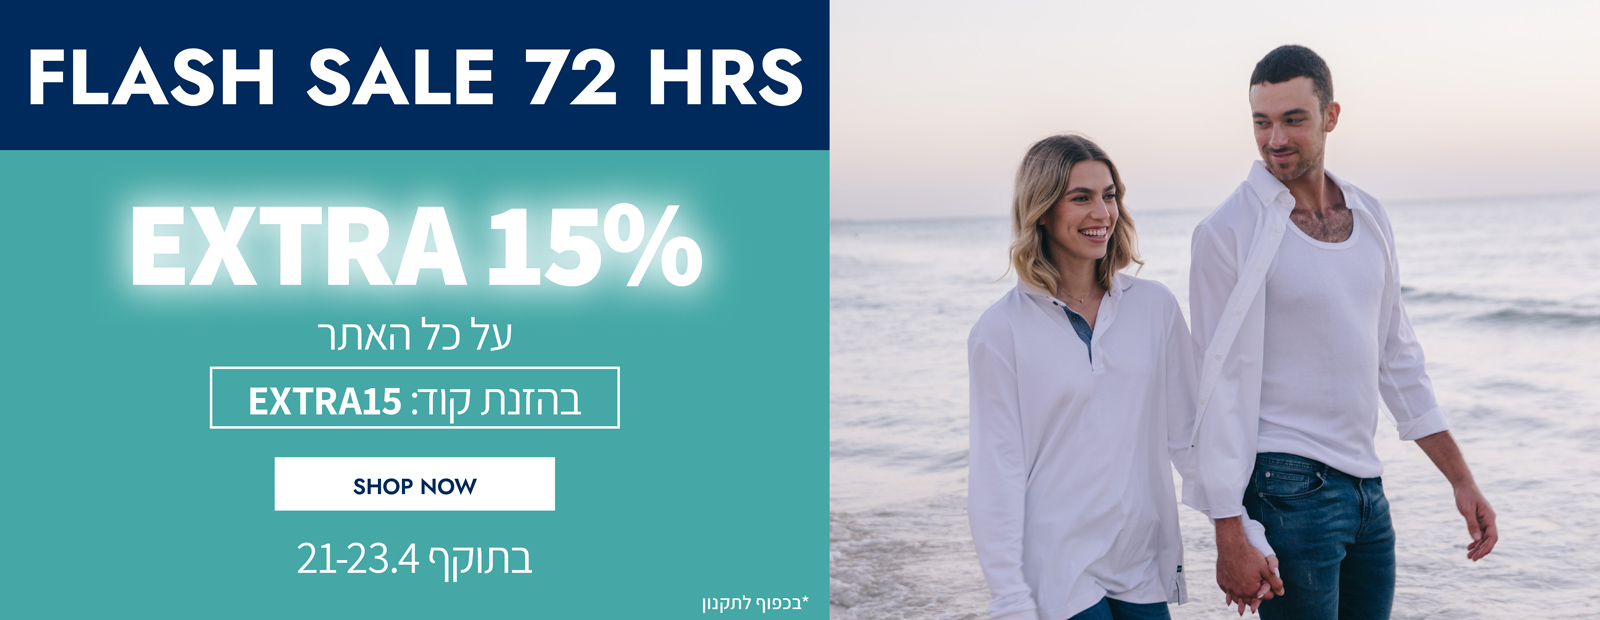 פלאש סייל ל-72 שעות - 15% הנחה נוספים על כל האתר! בתוקף עד 23.4